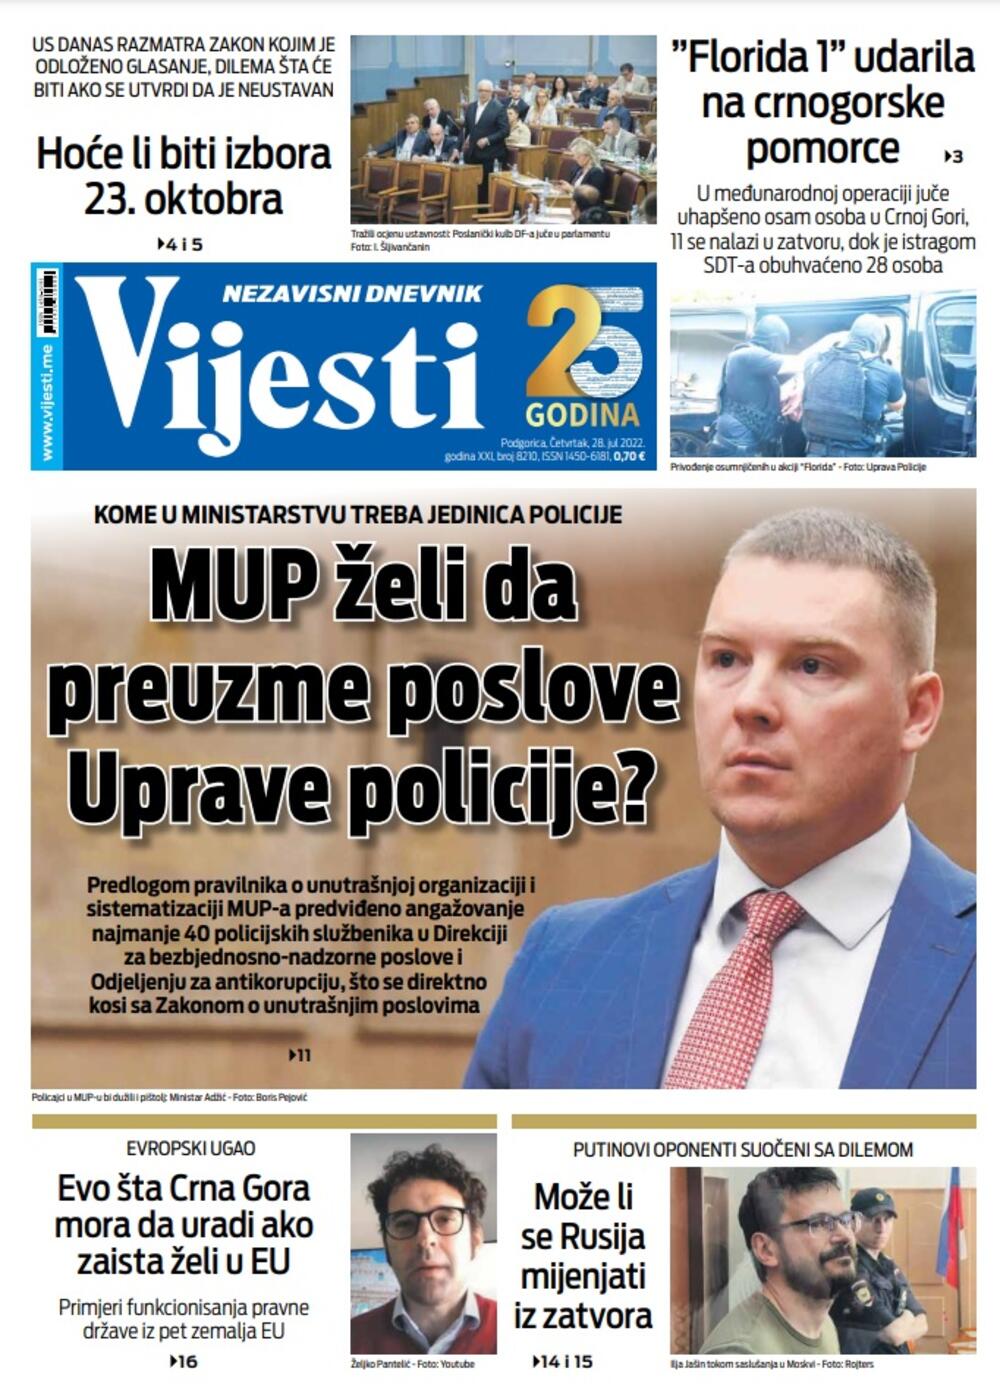 Naslovna strana "Vijesti" 28. jul 2022. godine, Foto: Vijesti